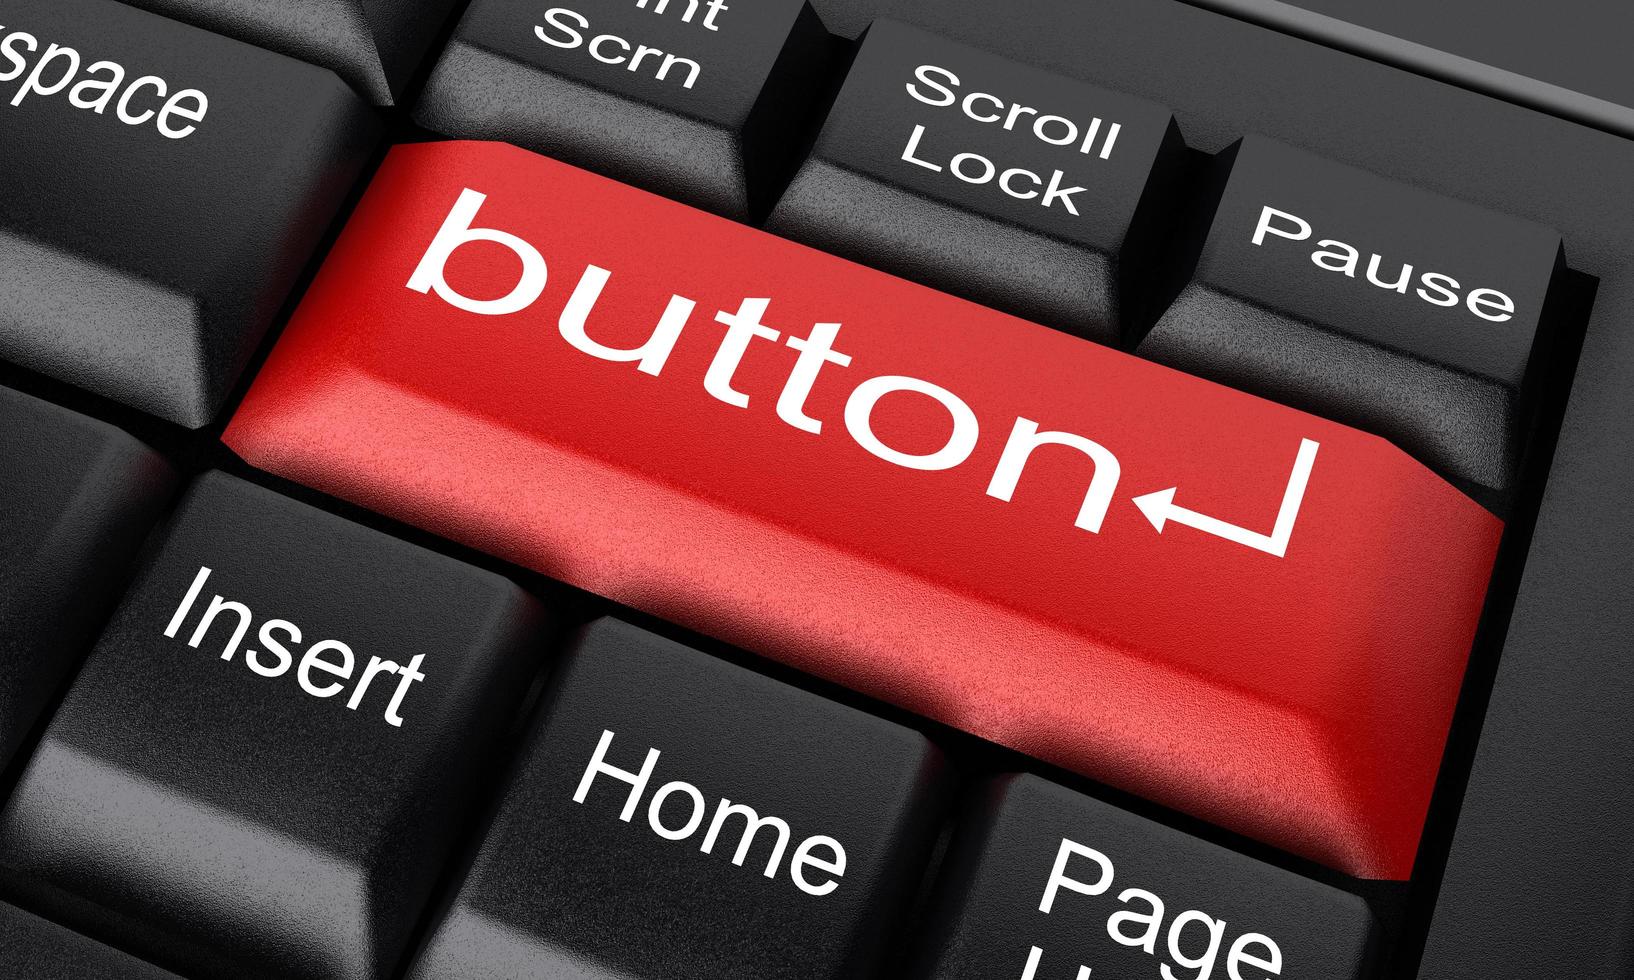 palavra de botão no botão vermelho do teclado foto